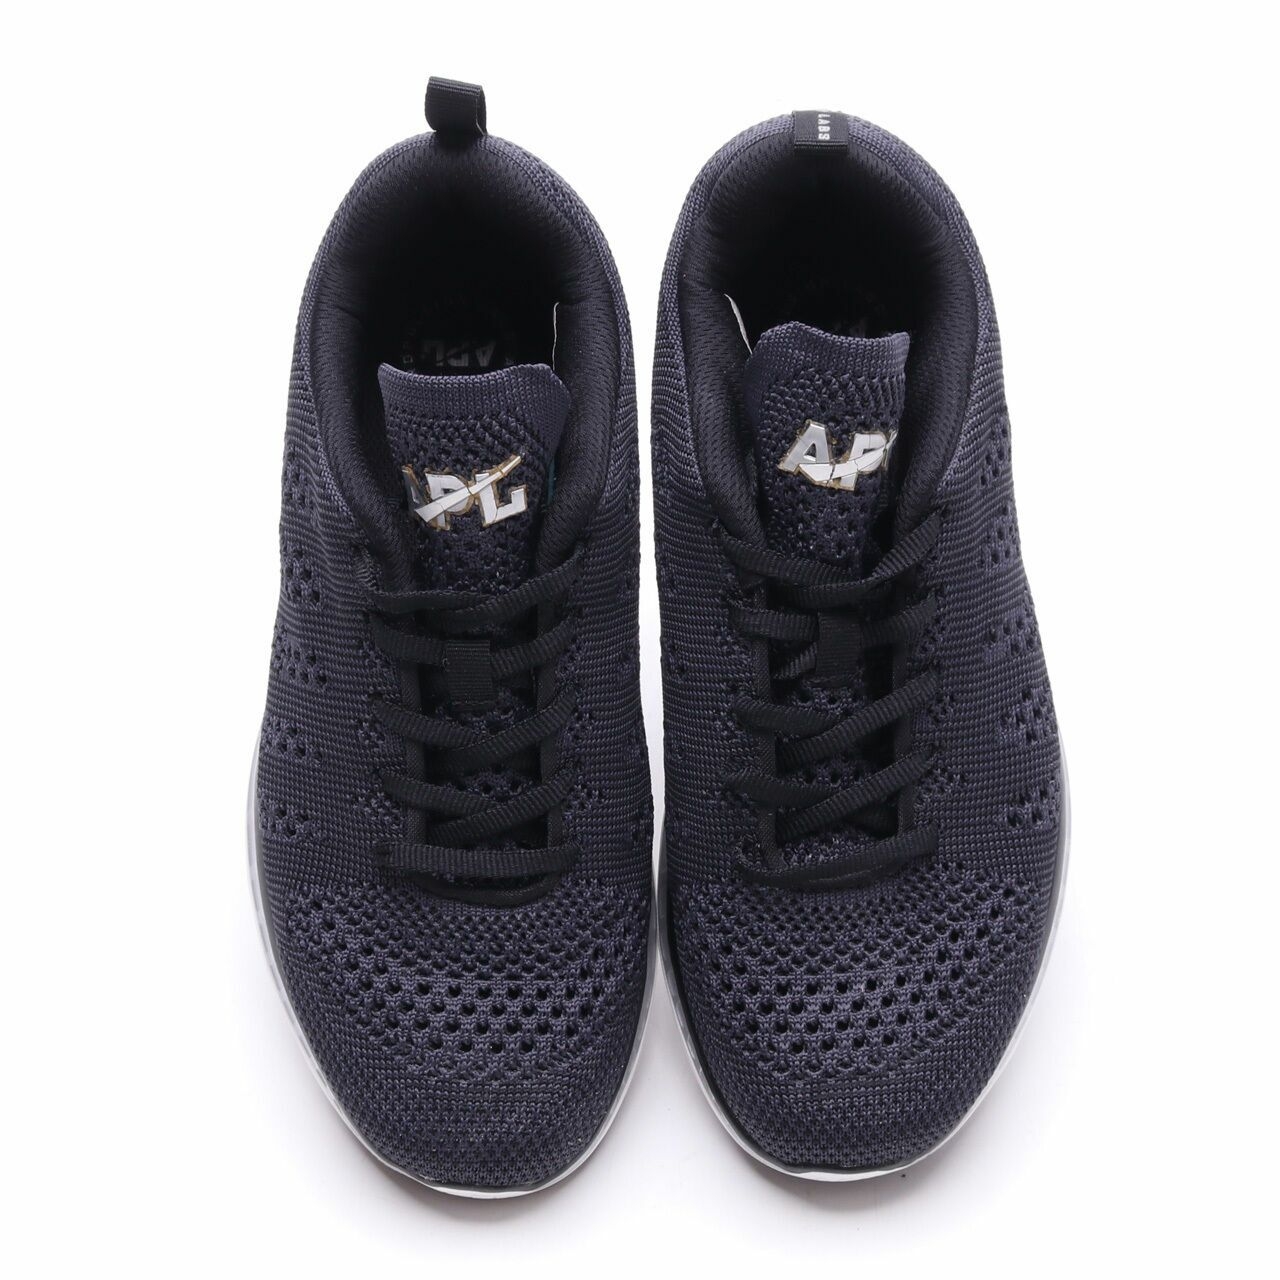 Athletic Propulsion Labs APL Black/Dark Blue Sneakers